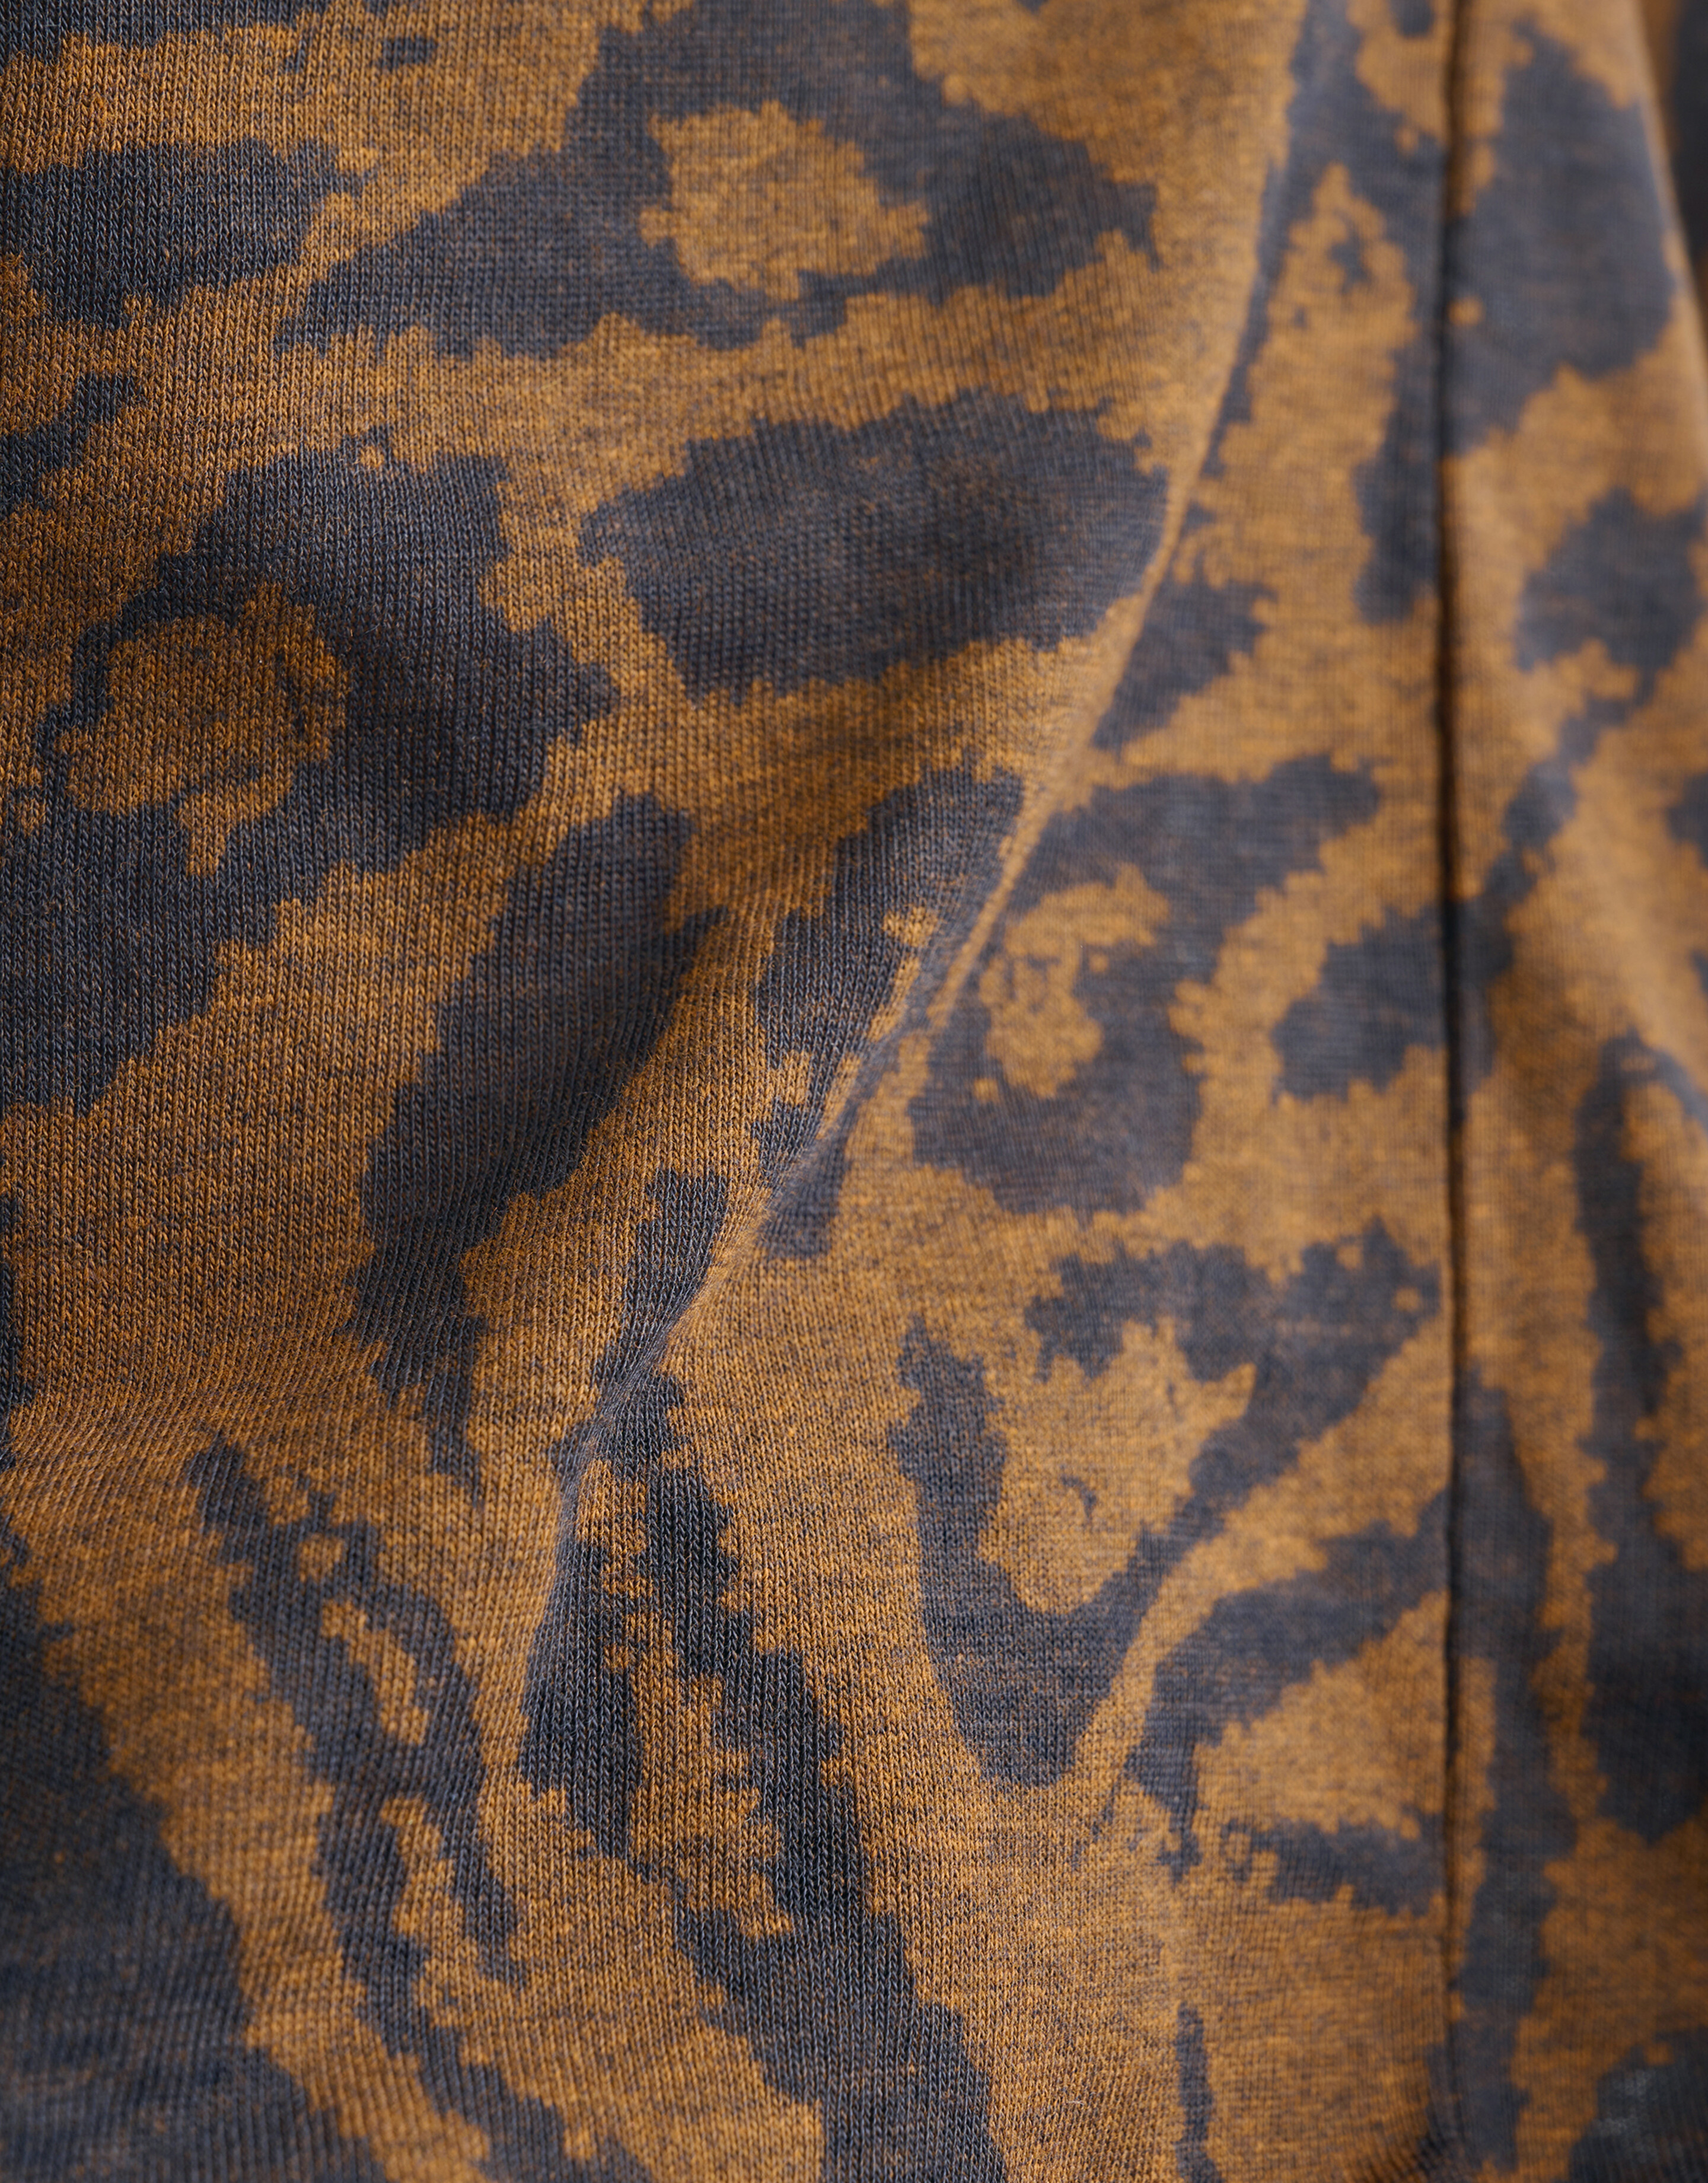 Leopard Print V-Hals T-shirt Bruin SHOEBY WOMEN